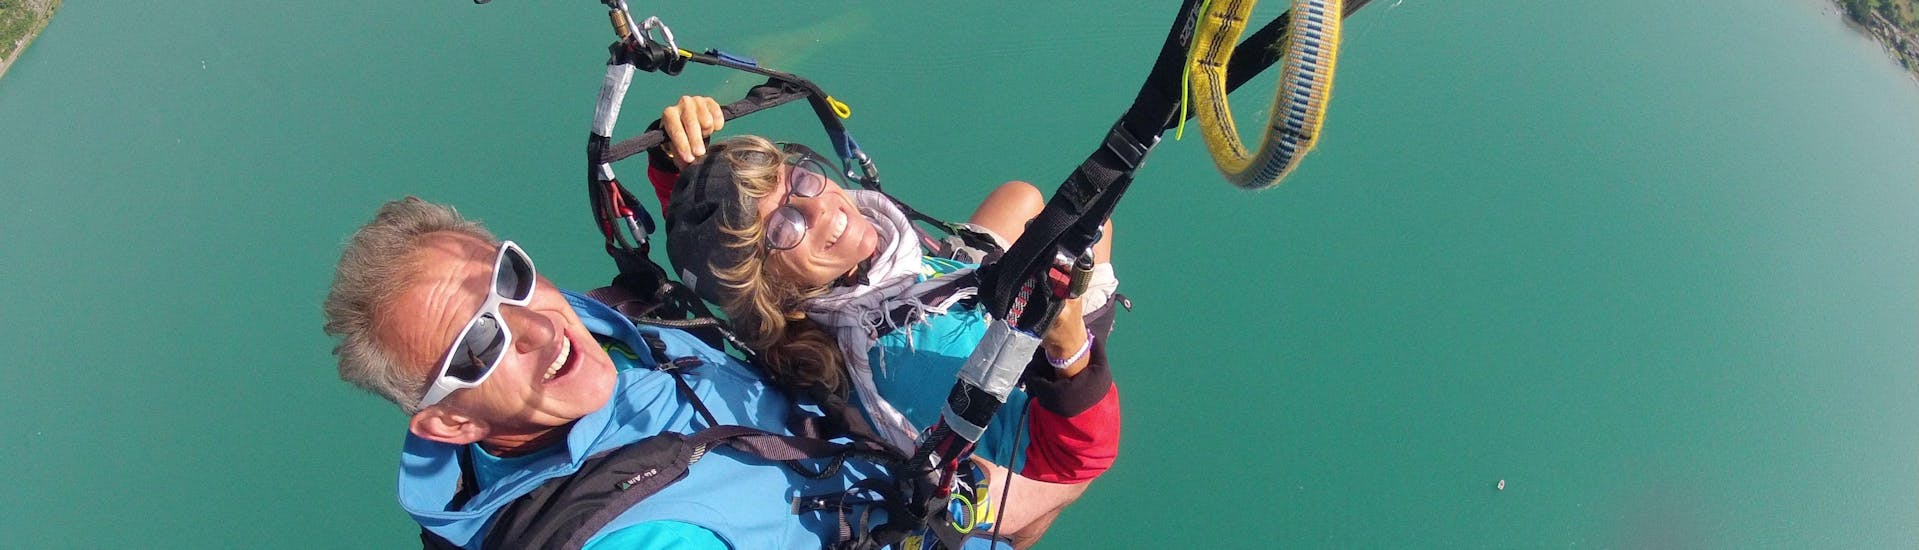 Eine Frau genießt ihr Tandem-Paragliding am Lac d'Annecy - Aufstiegsaktivität mit FBI Parapente.